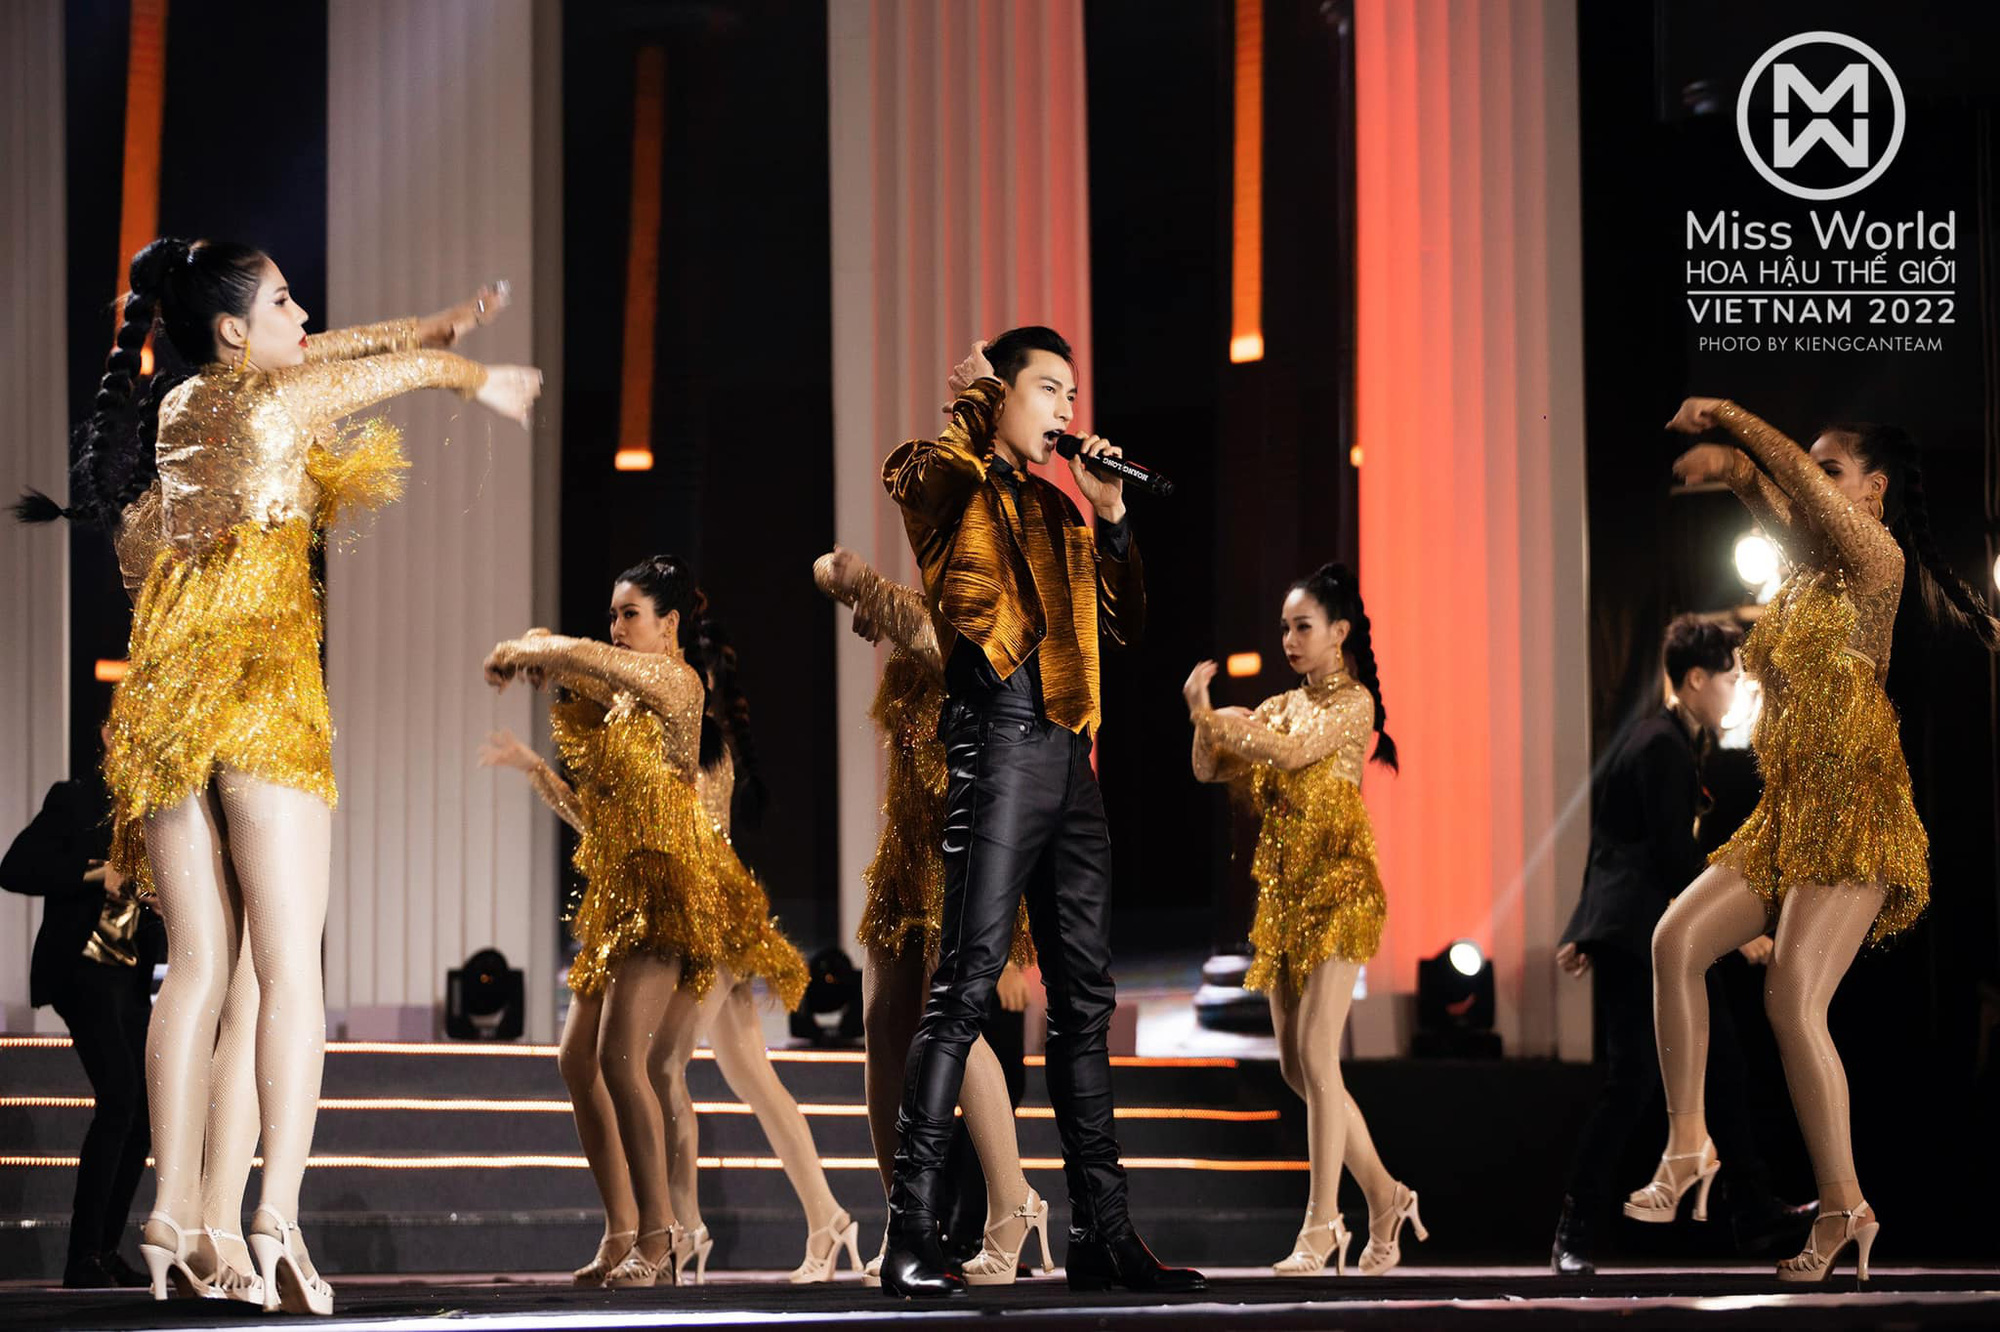 Mỹ Tâm khuấy động sân khấu Miss World Vietnam 2022